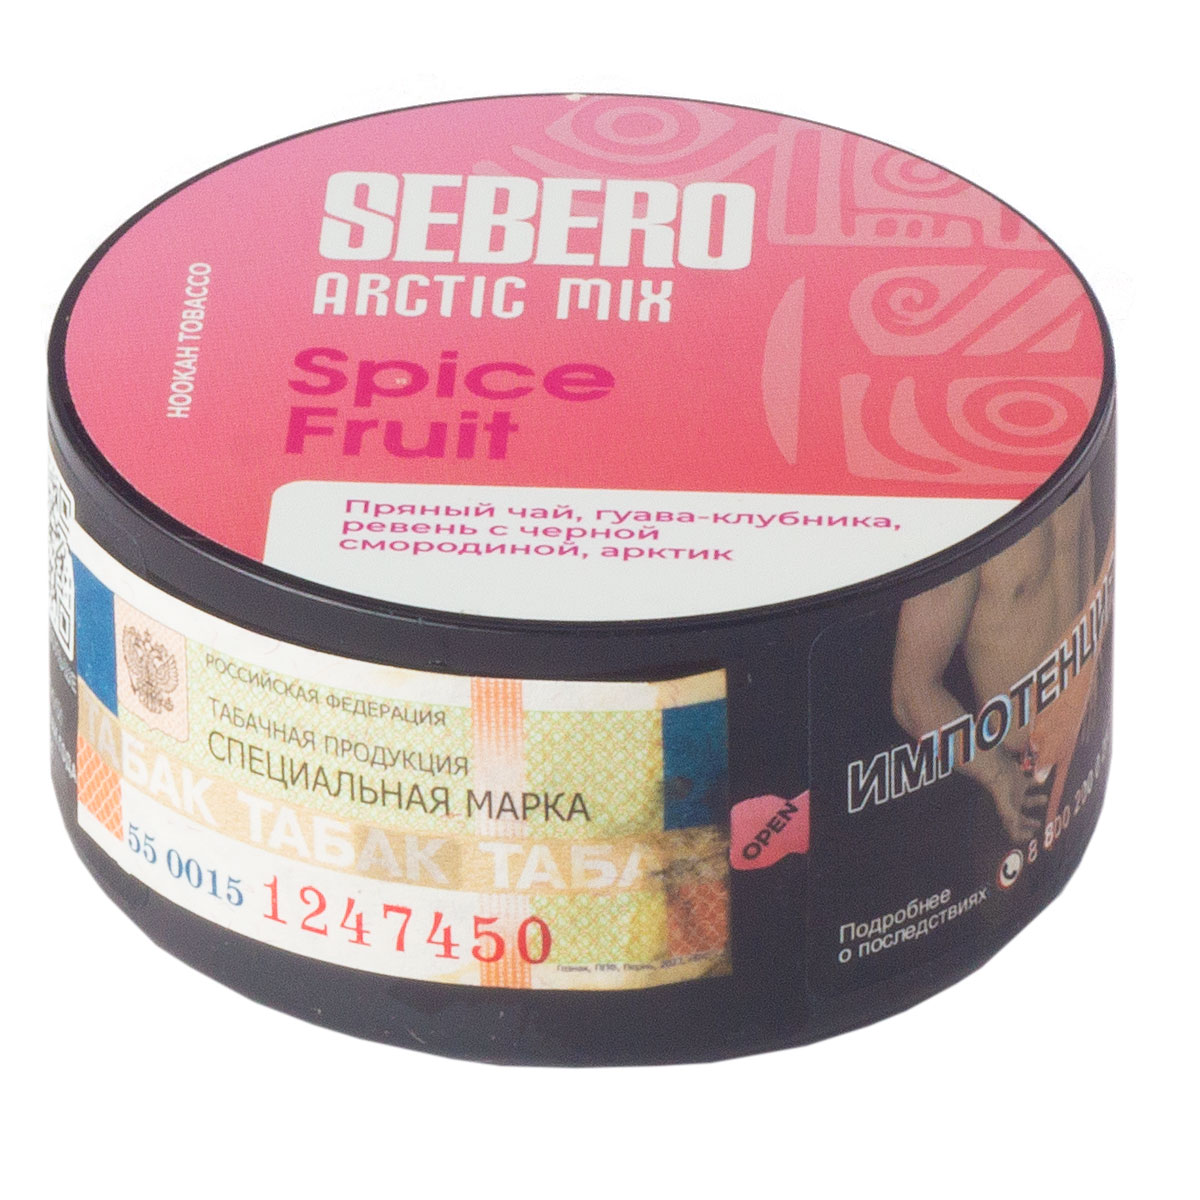 Табак для кальяна - Sebero Arctic Mix - Spice Fruit ( с ароматом пряный чай, гуава-клубника, ревень с черной смородиной, арктик ) - 25 г